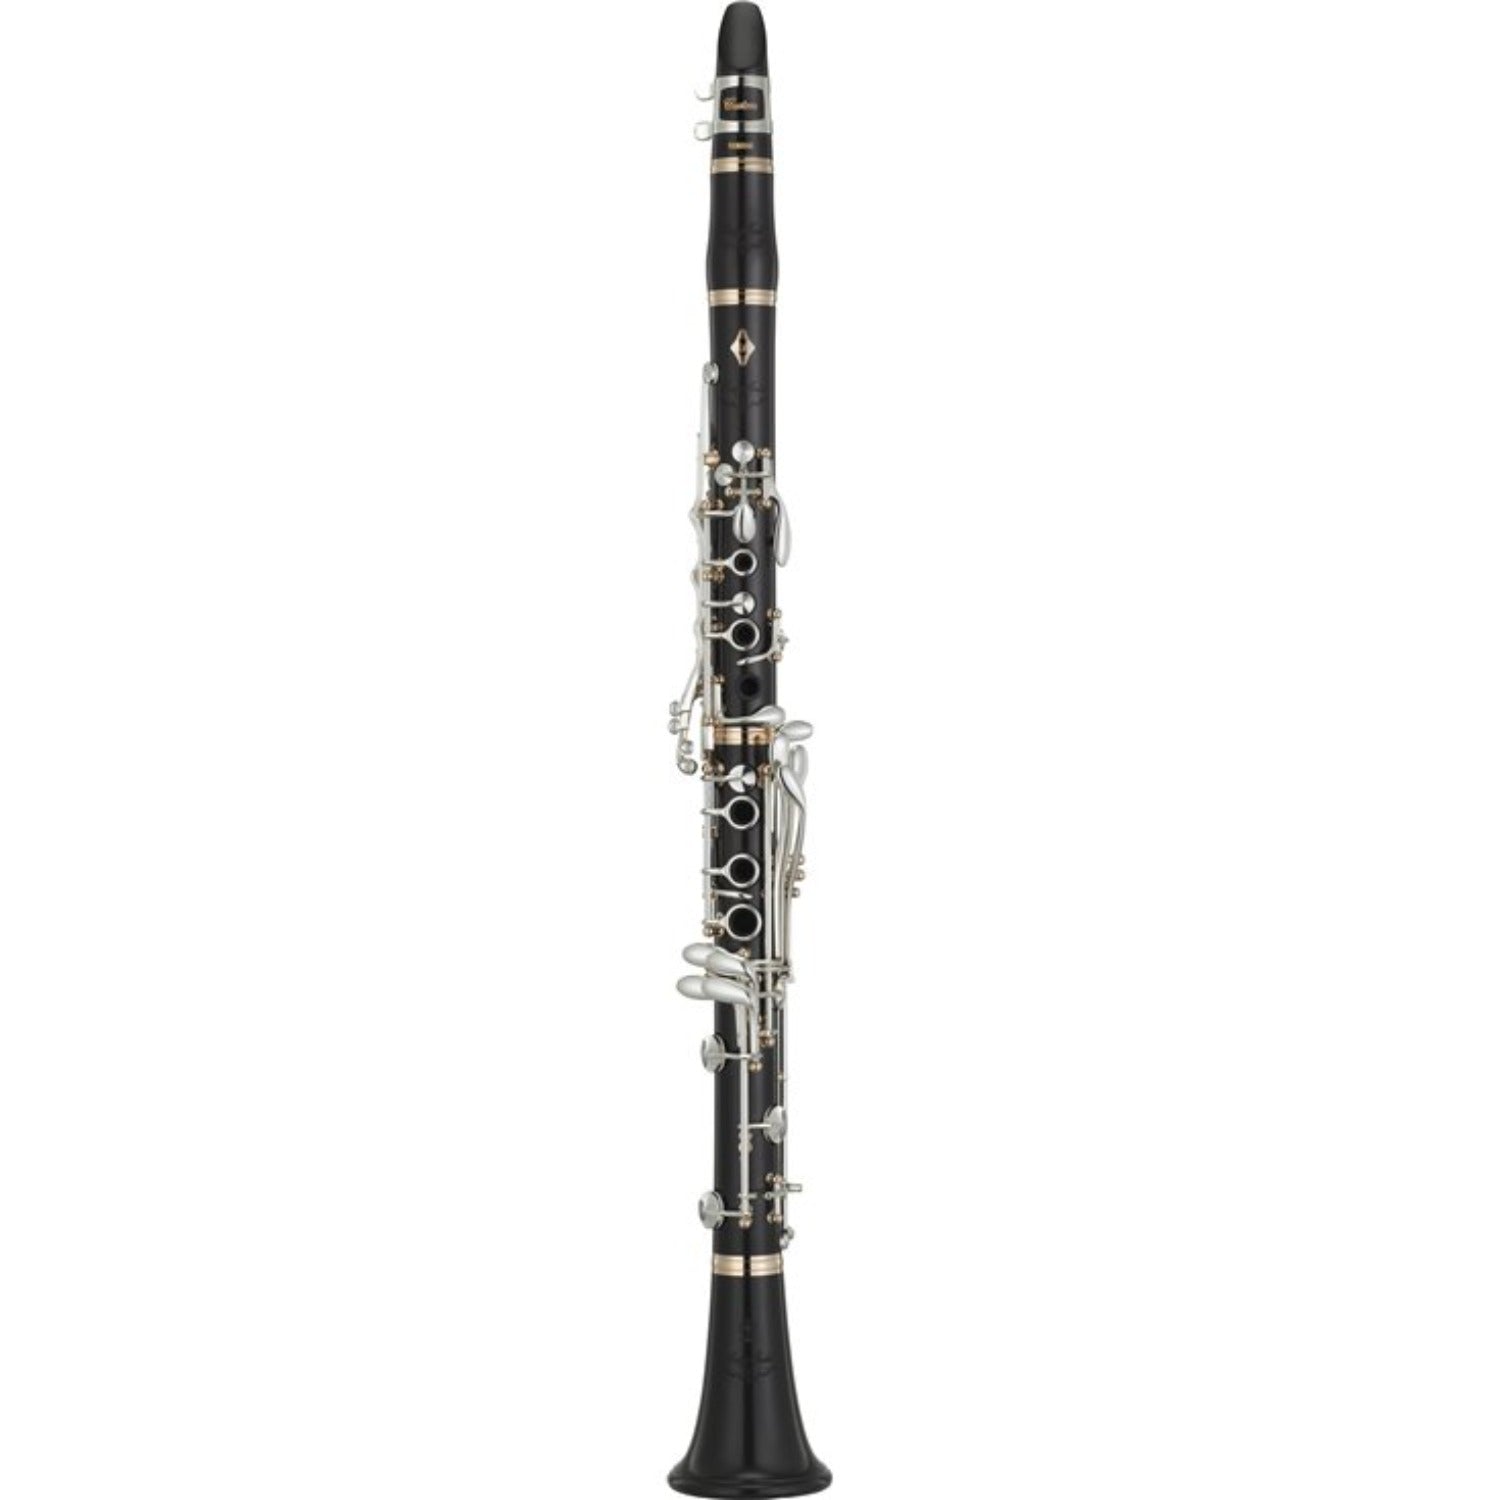 Yamaha SE Artist clarinet against white background